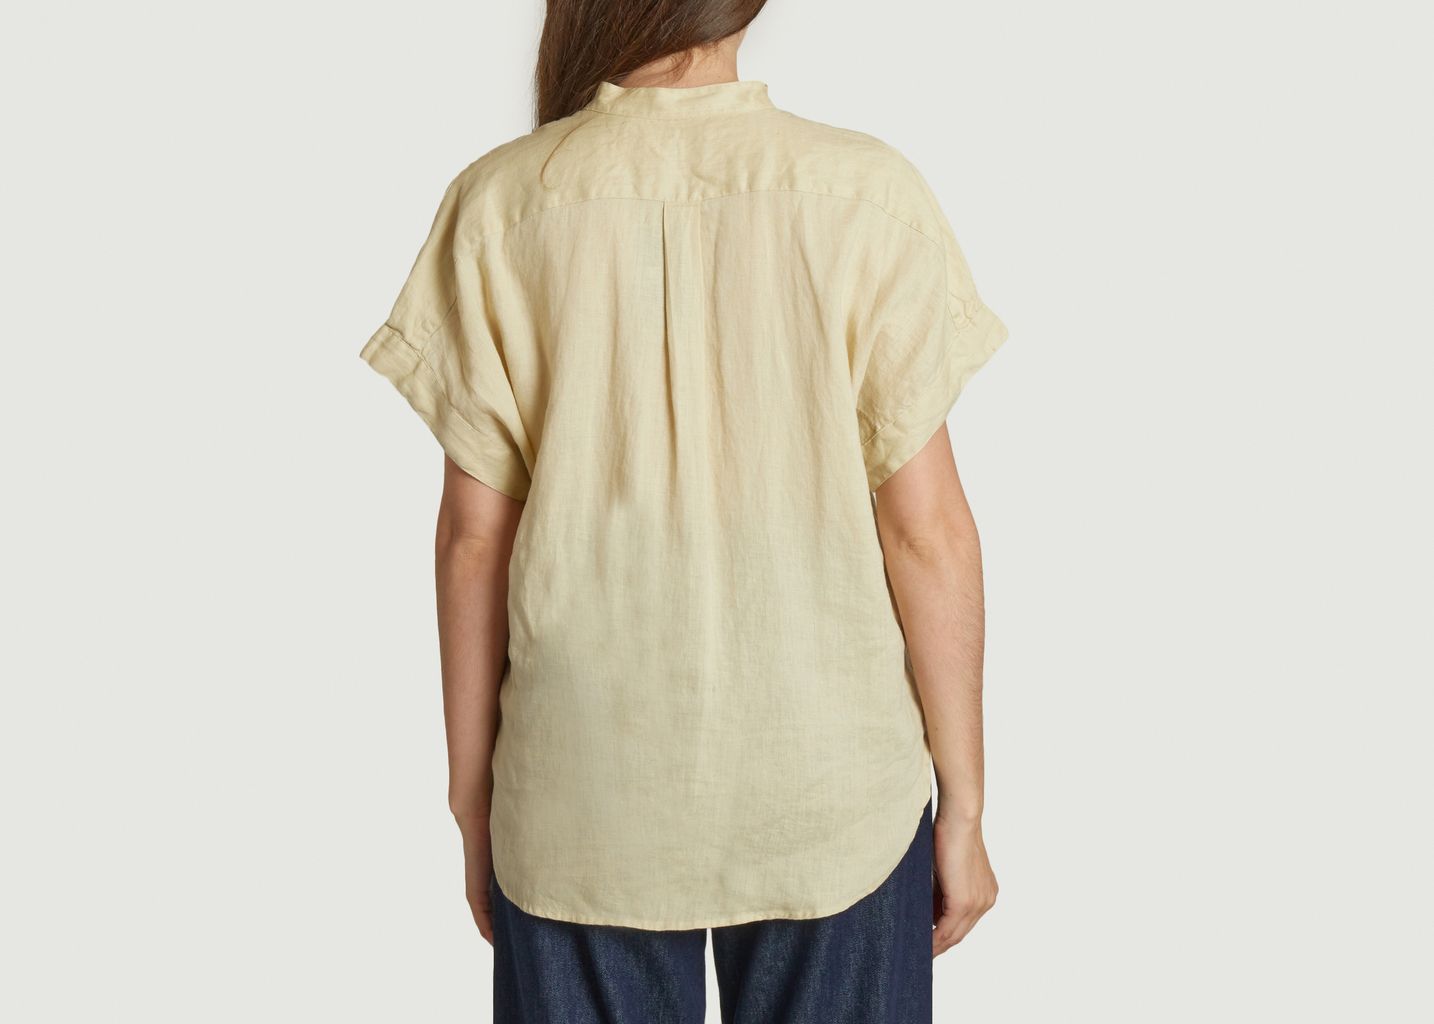 alen shirt - Polo Ralph Lauren